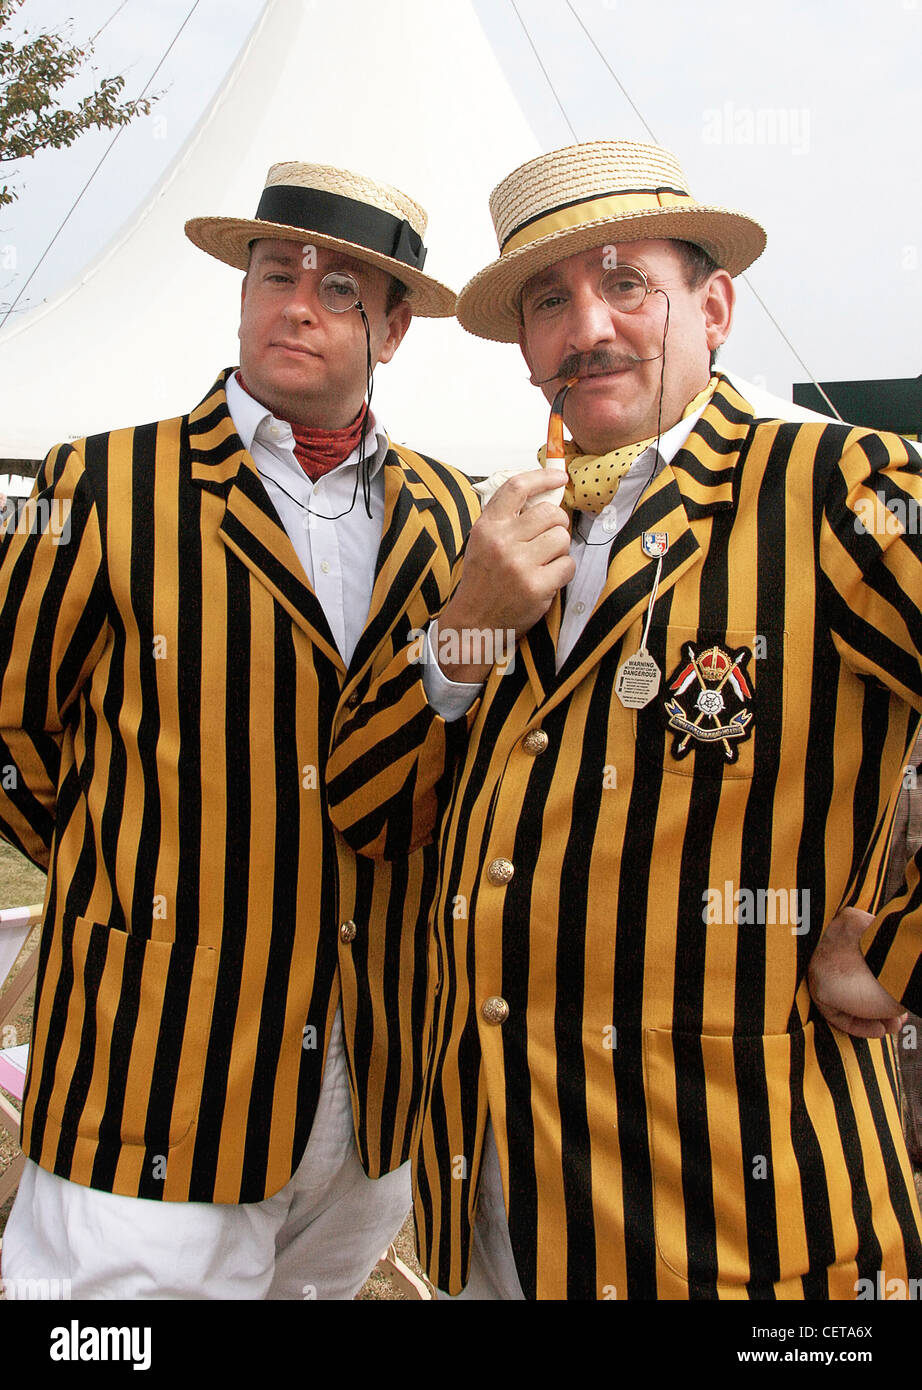 Männer in Retro-Outfits mit Strohhüten, Monokel Brillen, Rohr und Jacken beim Goodwood Revival. Stockfoto